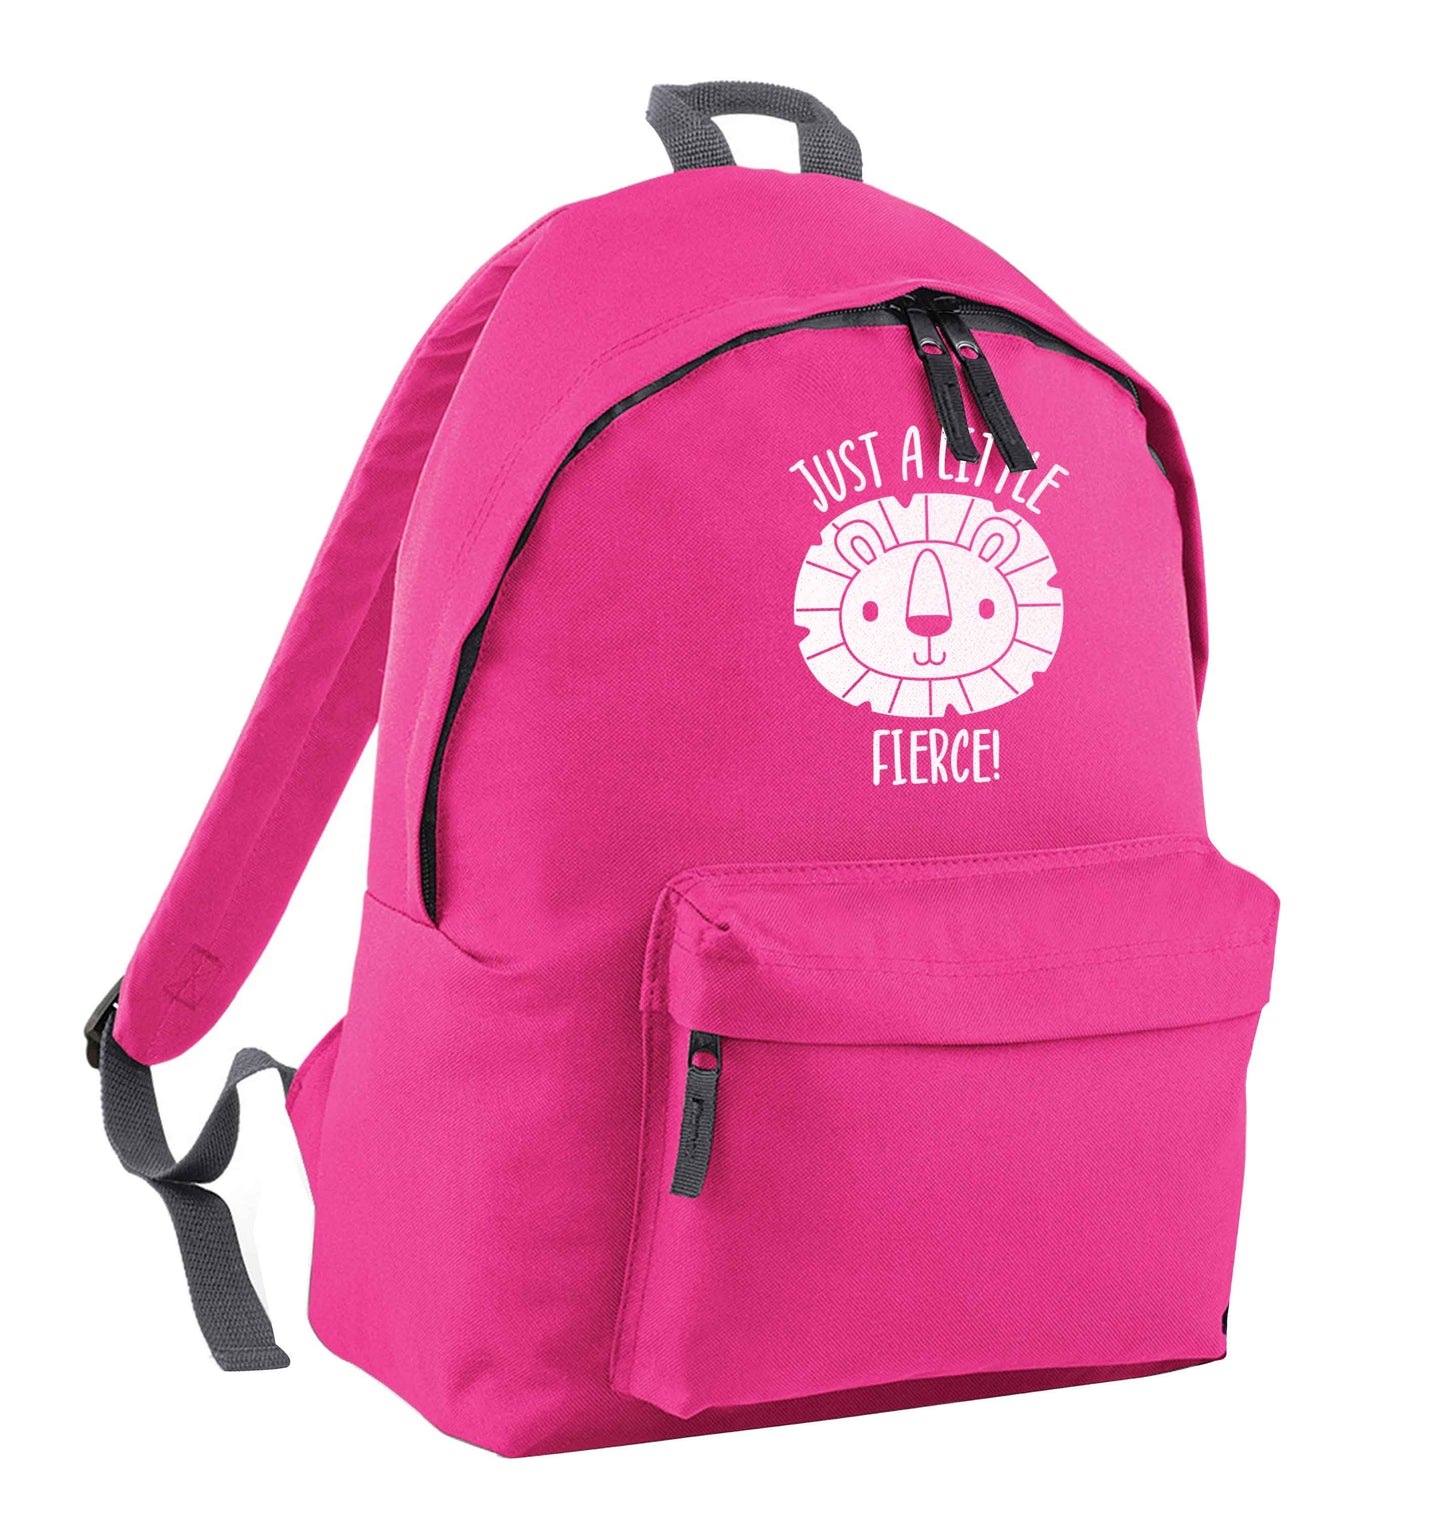 Just a little fierce pink children's backpack